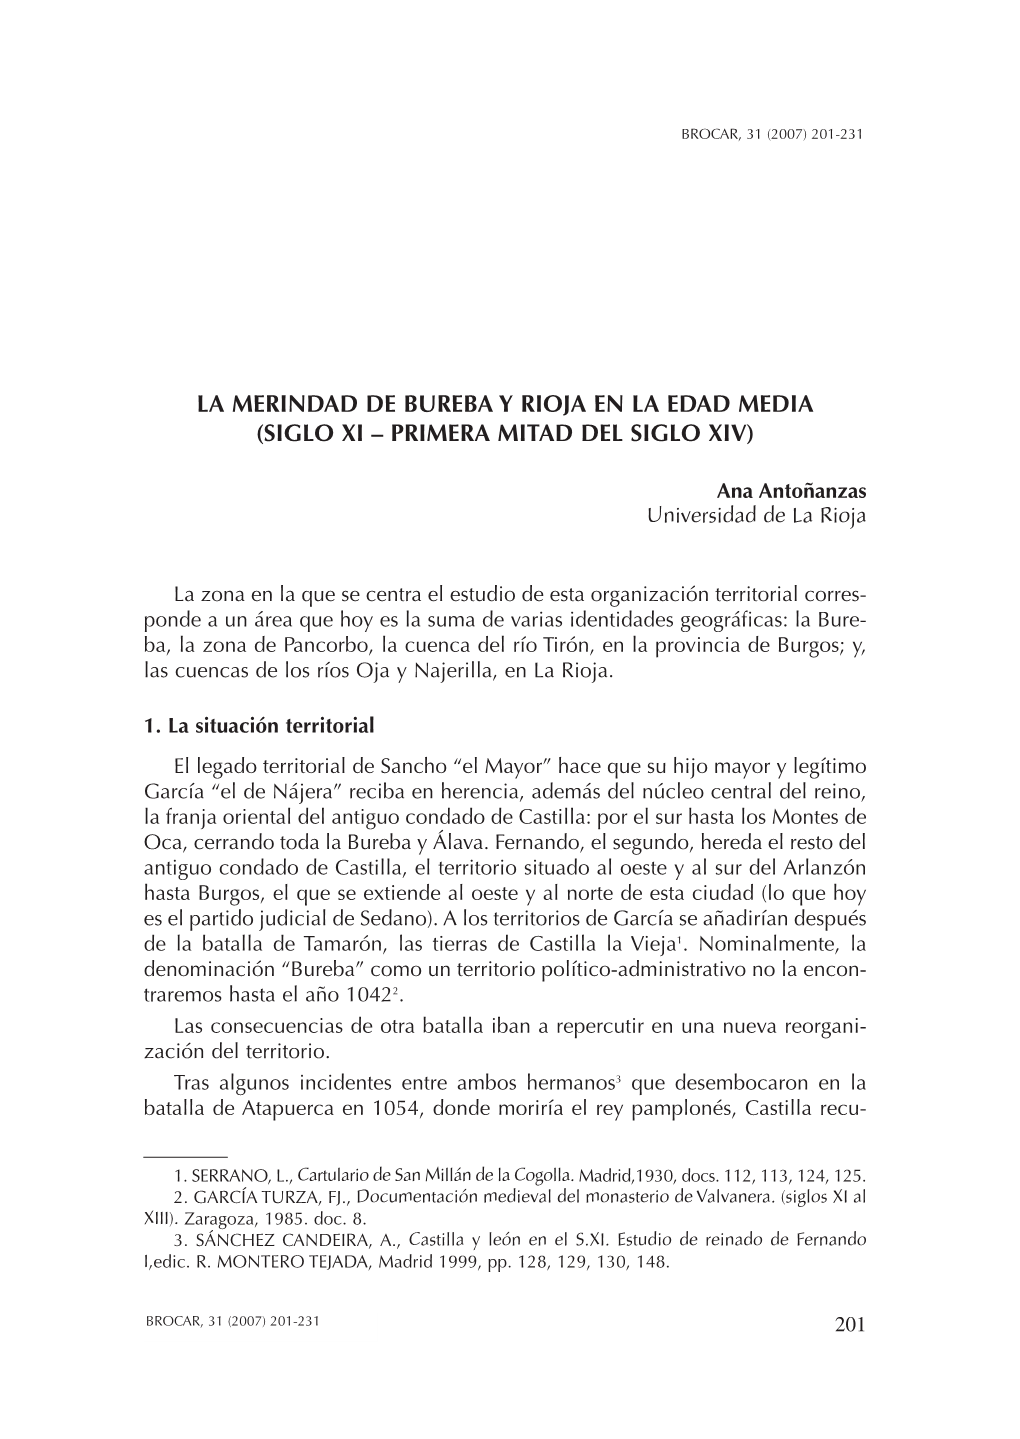 La Merindad De Bureba Y Rioja En La Edad Media (Siglo Xi – Primera Mitad Del Siglo Xiv)